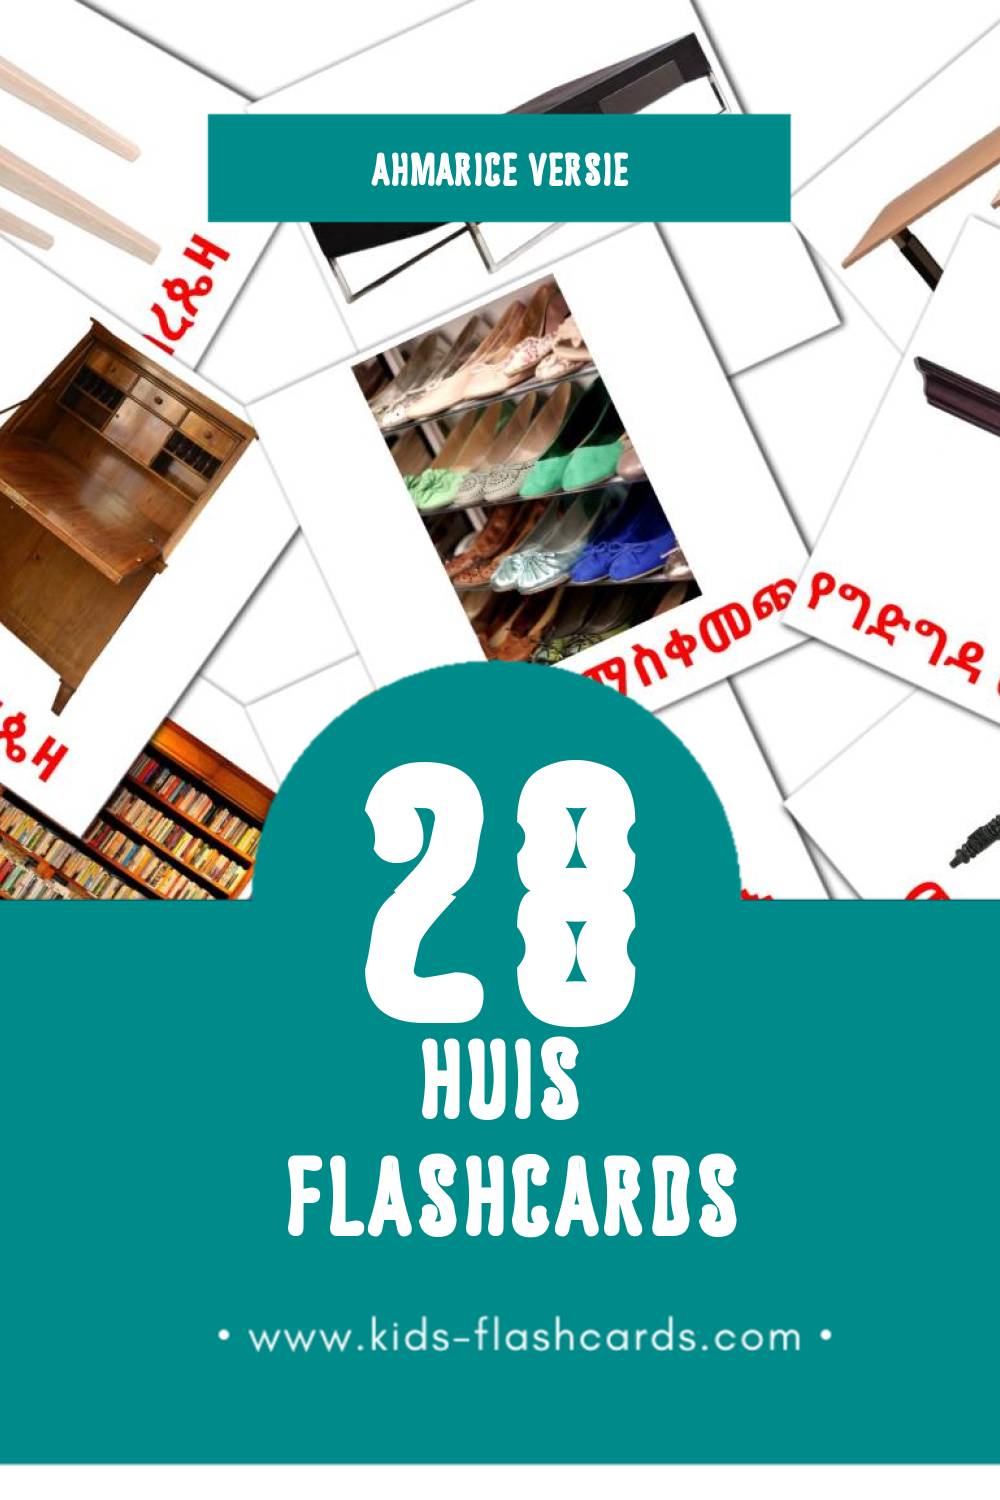 Visuele ቤት Flashcards voor Kleuters (45 kaarten in het Ahmaric)